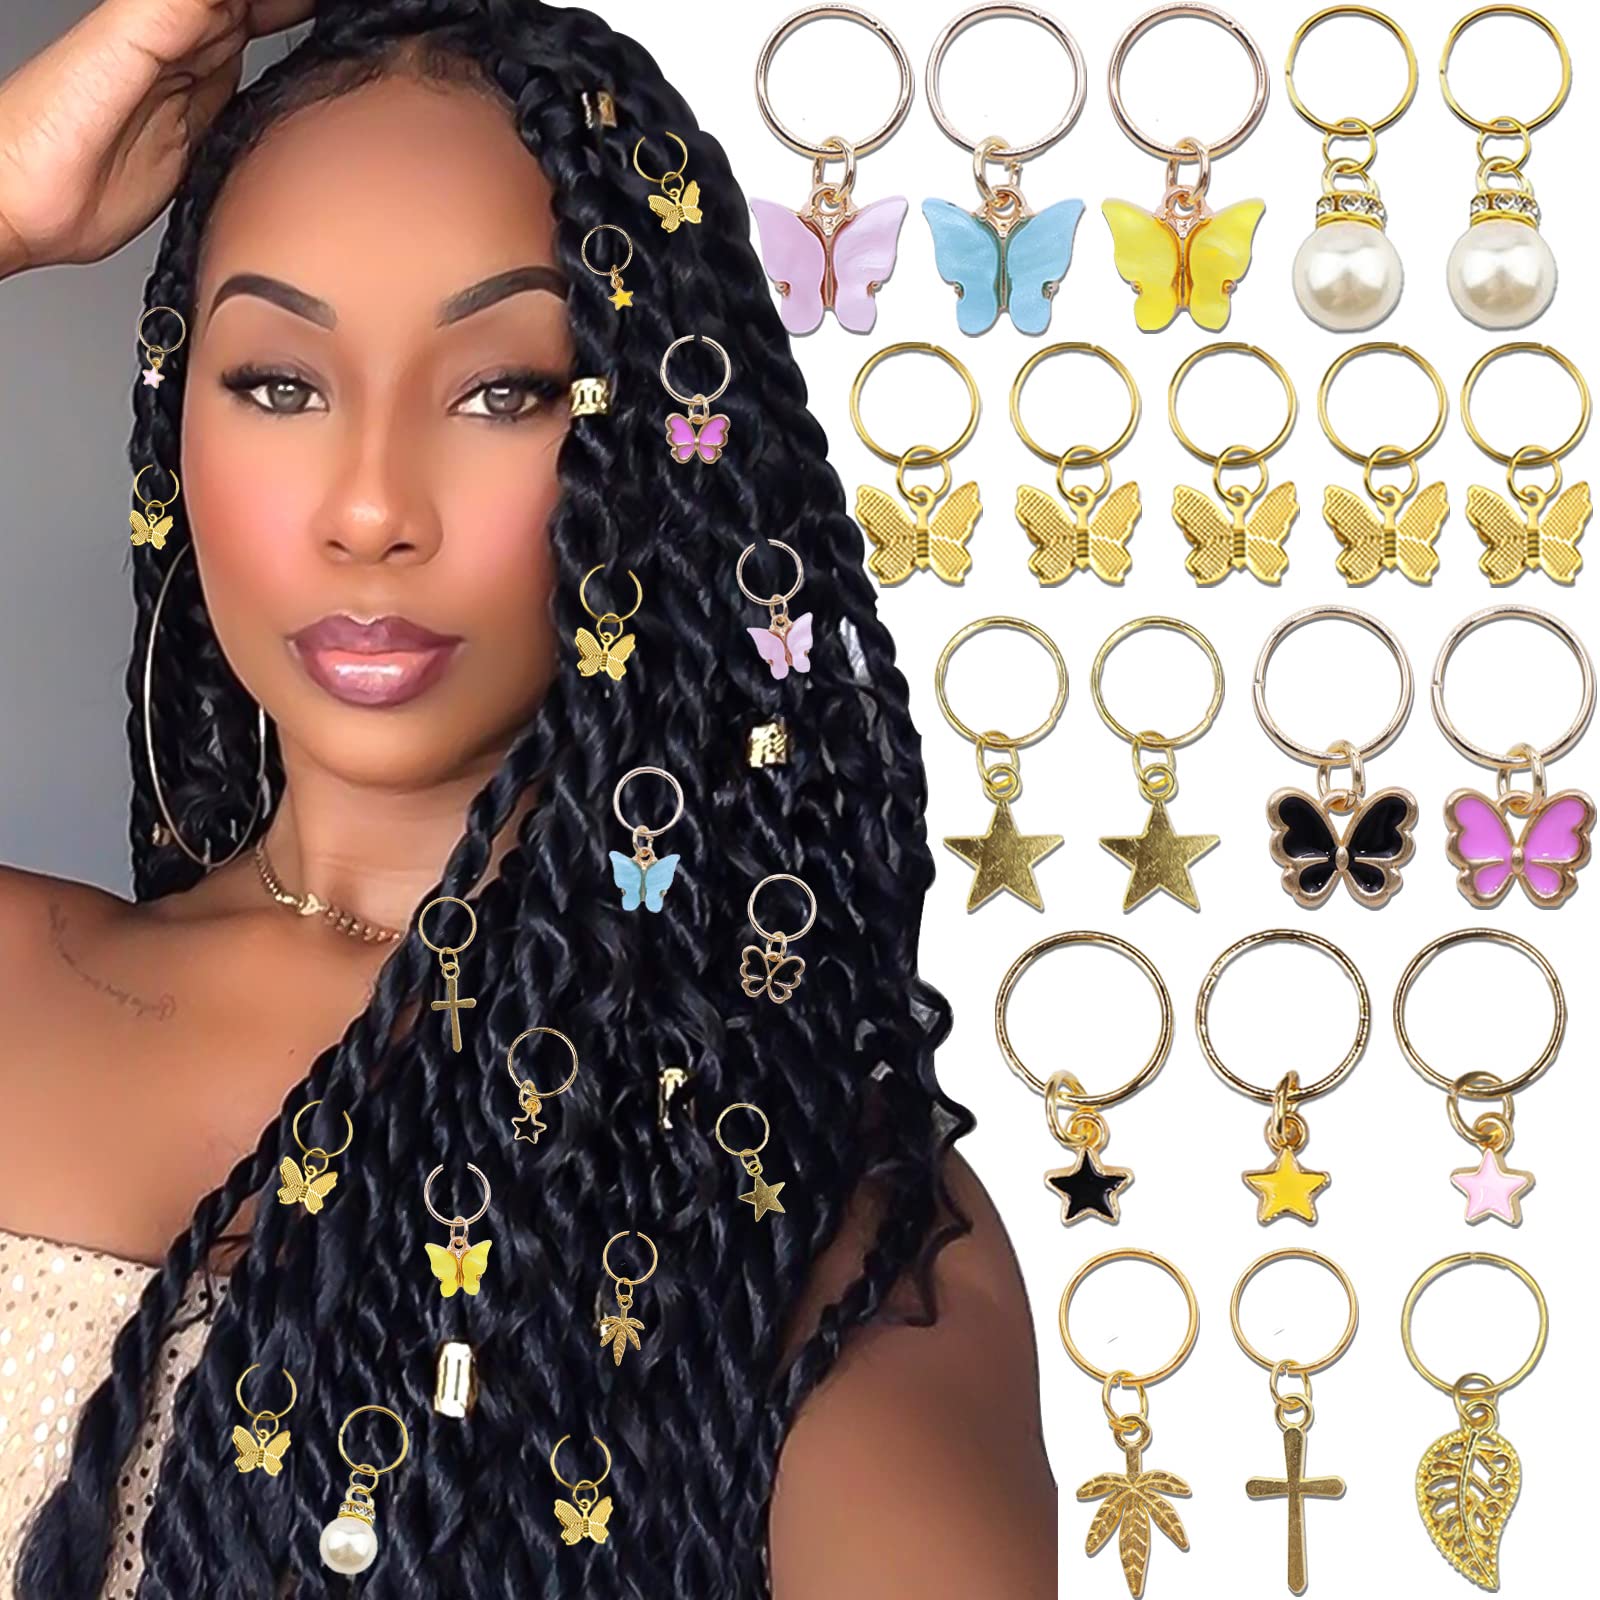 102 PCS Hair Jewelry Dreadlocks Loc Accessories Crystal Wire